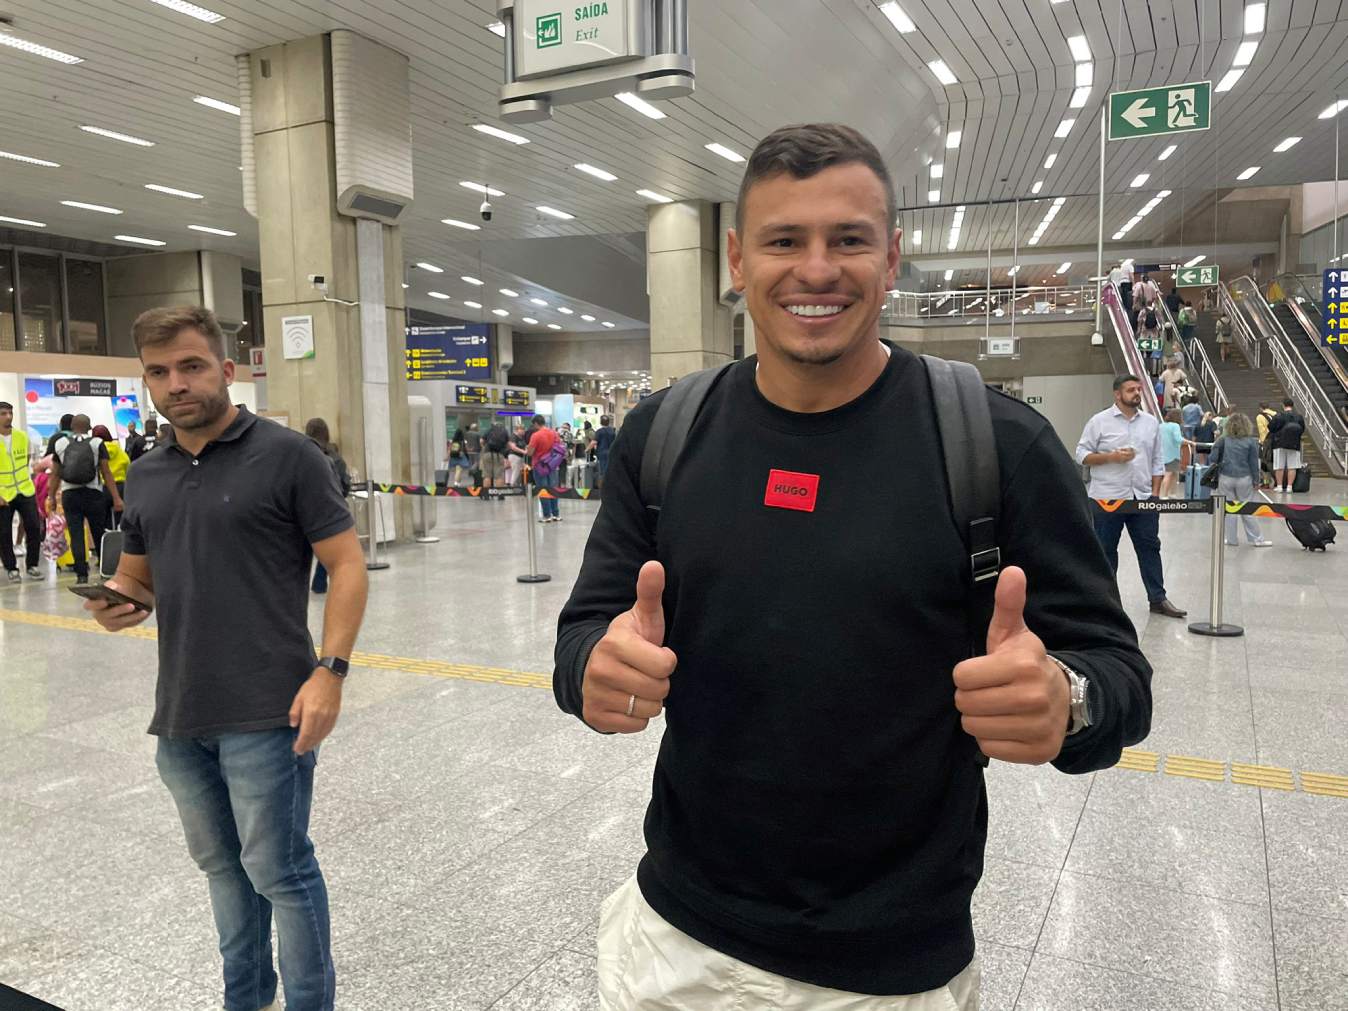 Hugo Moura chega ao Rio para assinar com o Vasco